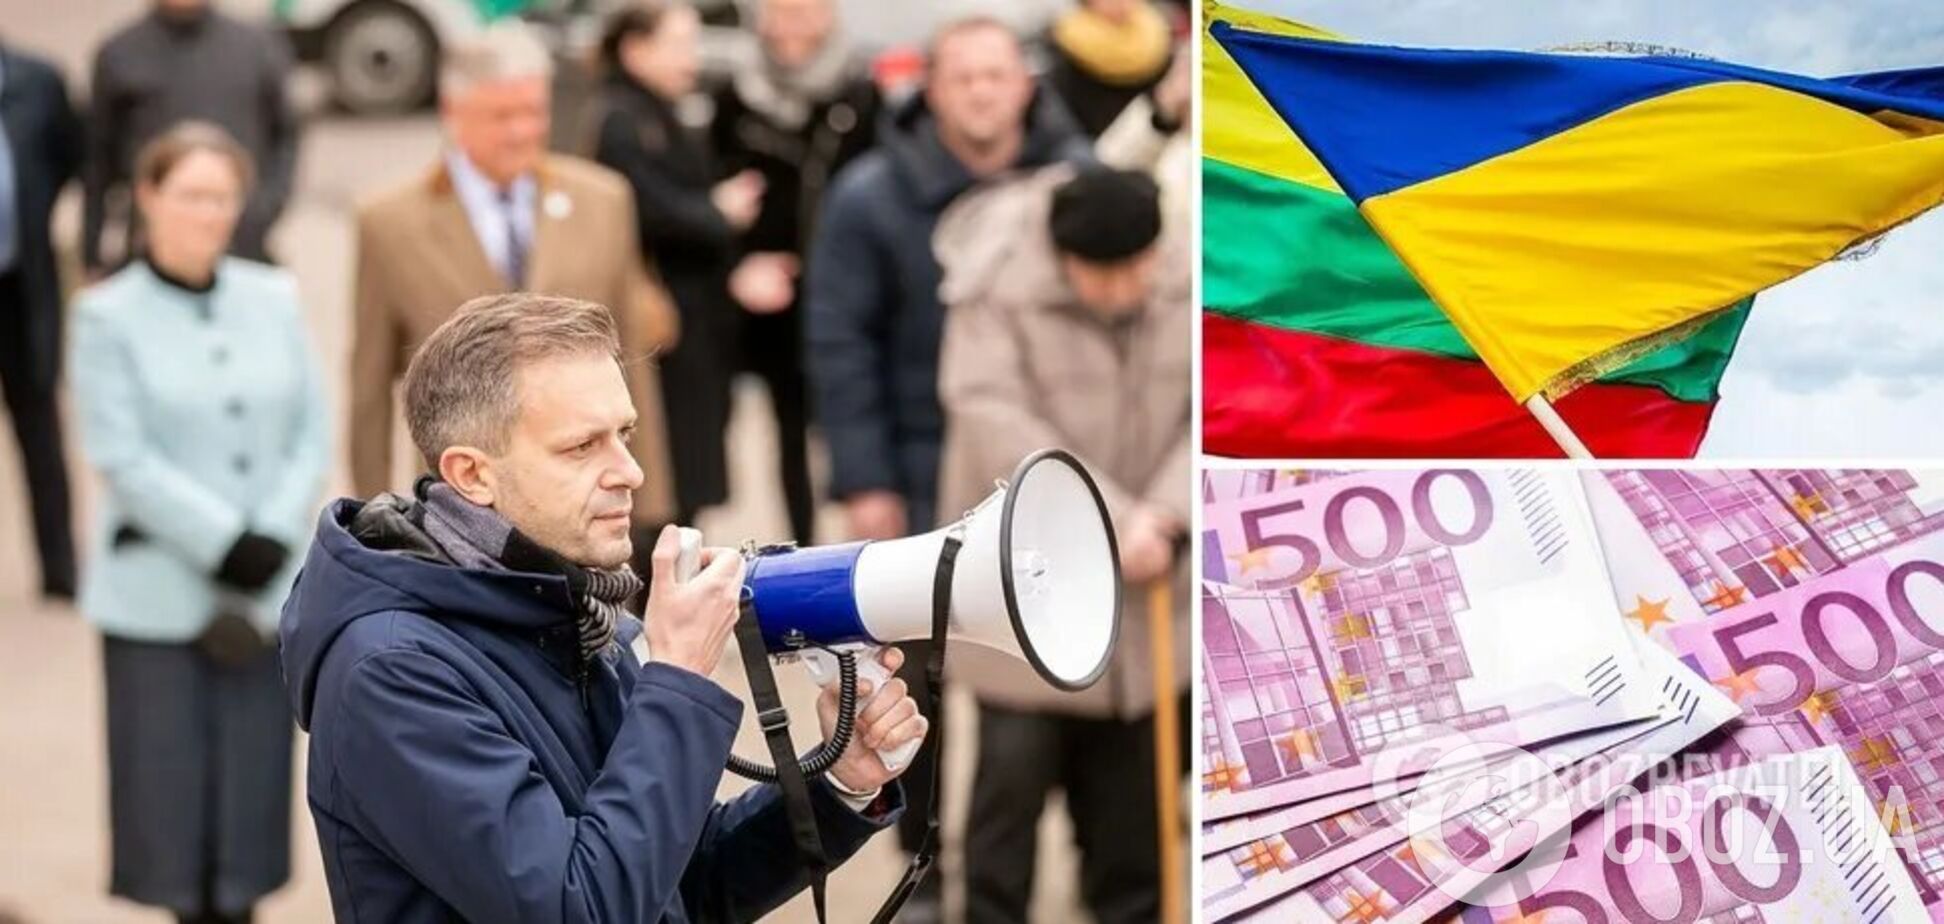 Литовцы собрали более миллиона евро на радары для Украины за час: это абсолютный рекорд